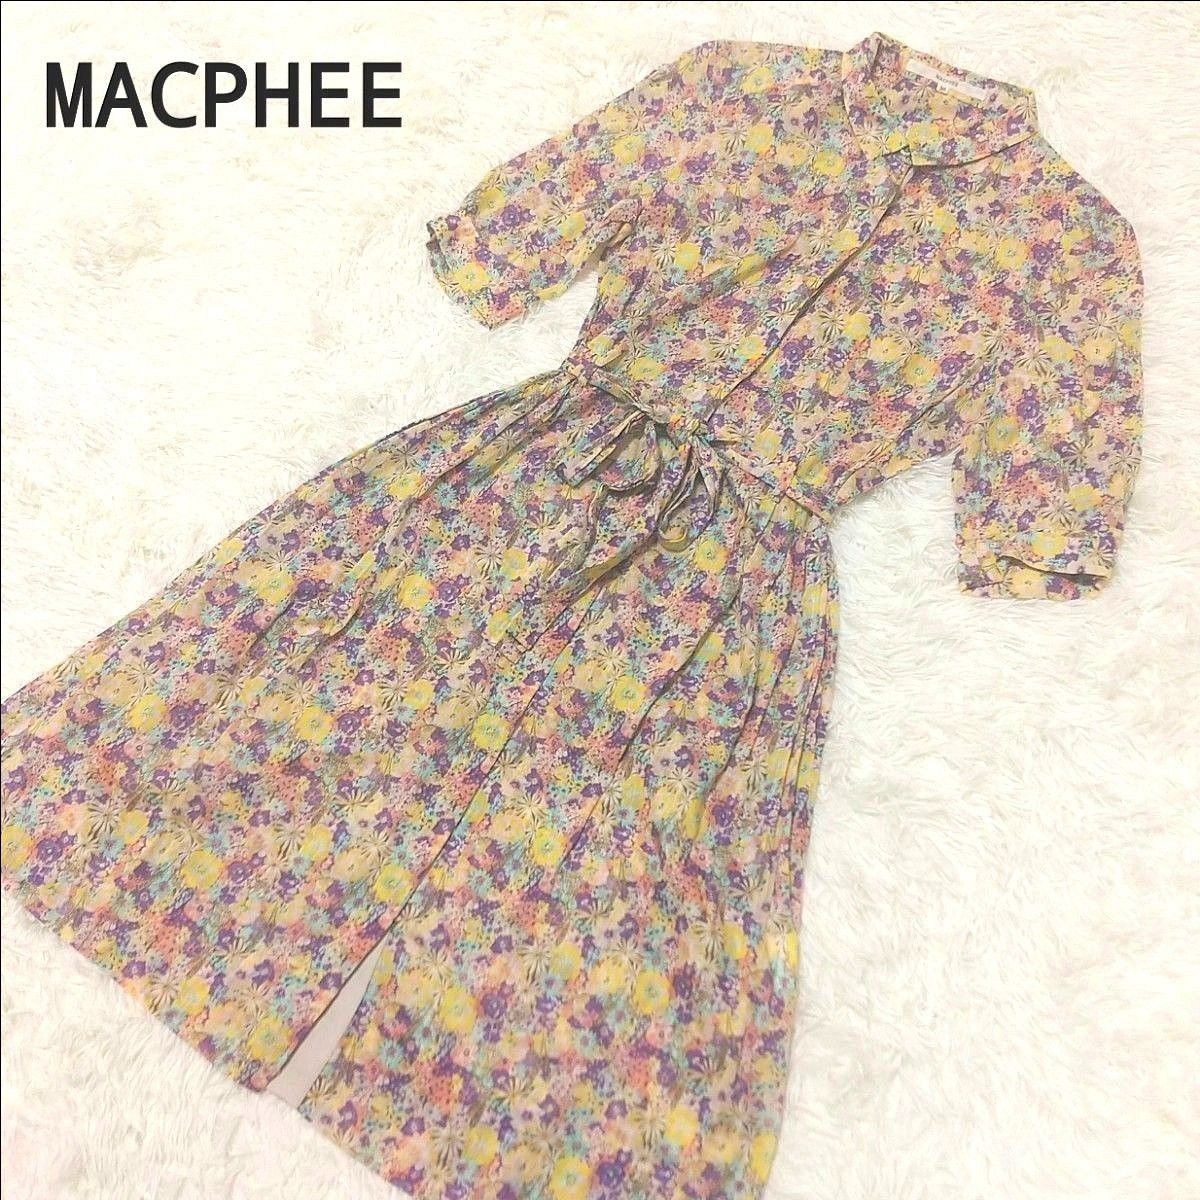 MACPHEE  マカフィー  シャツ  ワンピース  リバティ  花柄  総柄  Aライン  ベルト  コットン  リネン